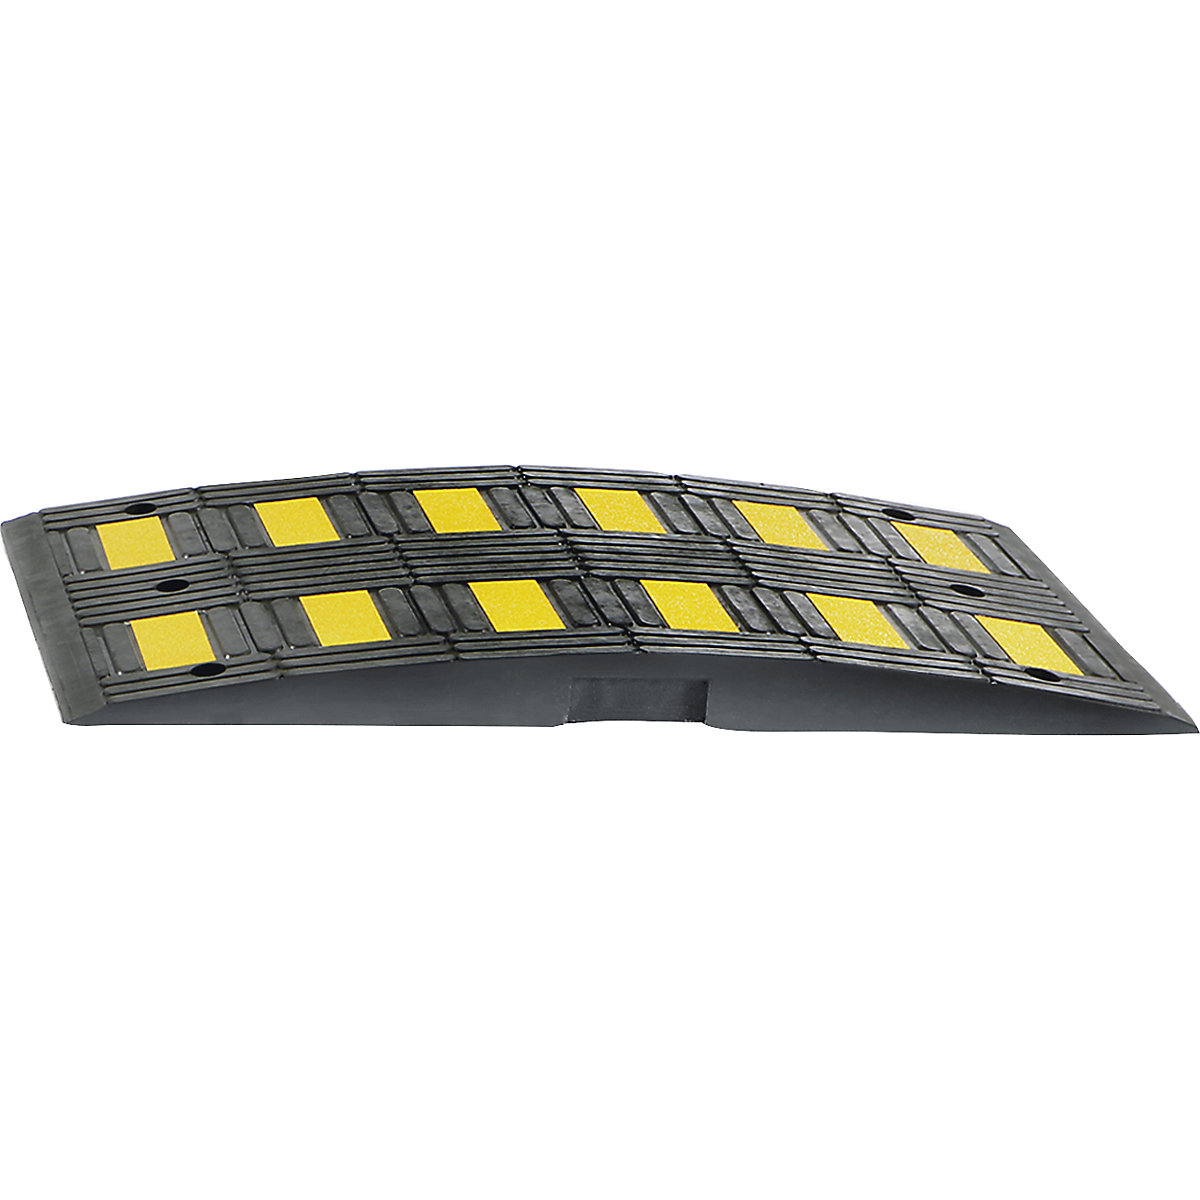 Verkeersdrempel gemaakt van gerecycled rubber, geel / zwart, voor richtsnelheid max. 20 km/h-3